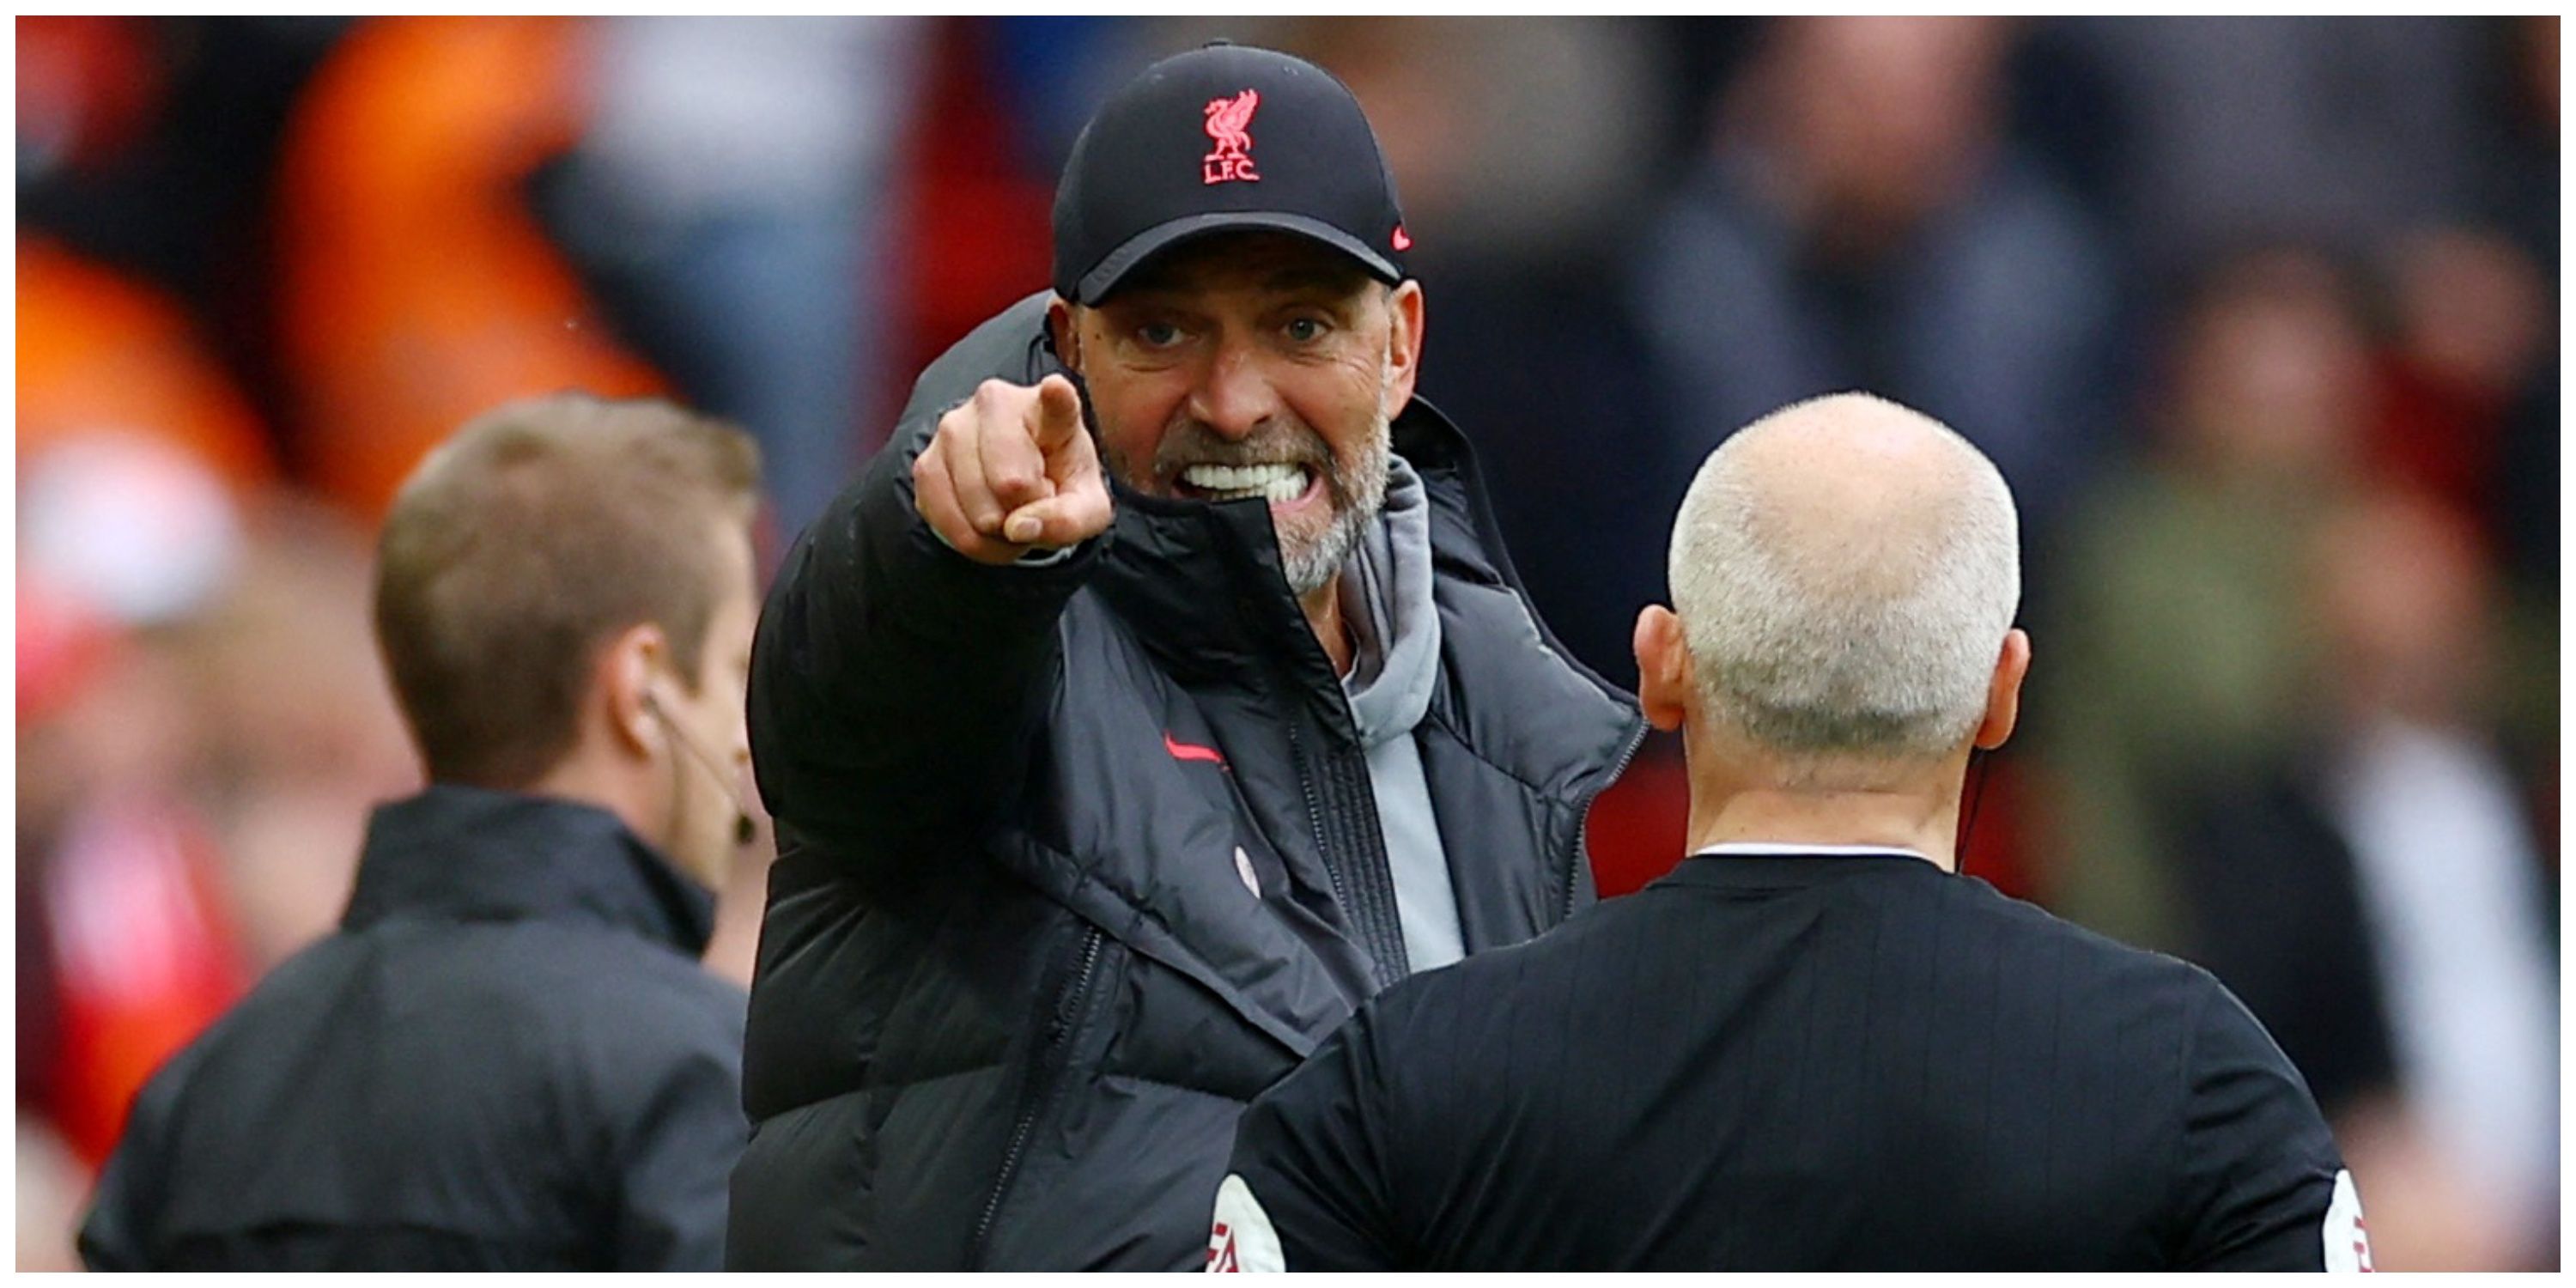 Liverpool manager Jurgen Klopp pointing